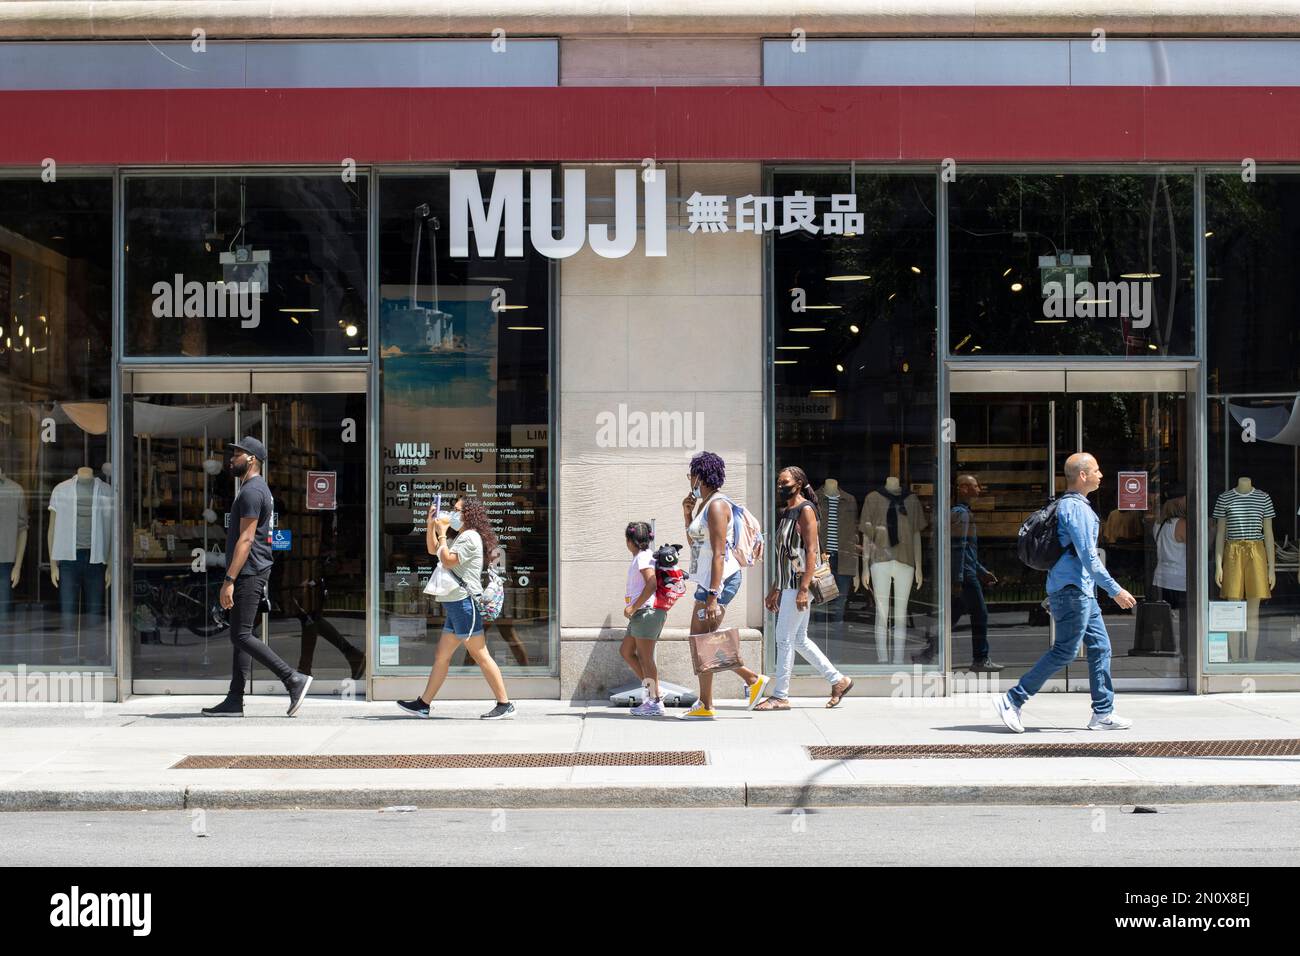 Vue de face du magasin MUJI sur la Cinquième Avenue à Midtown Manhattan, New York, vu lundi, 4 juillet 2022. Banque D'Images